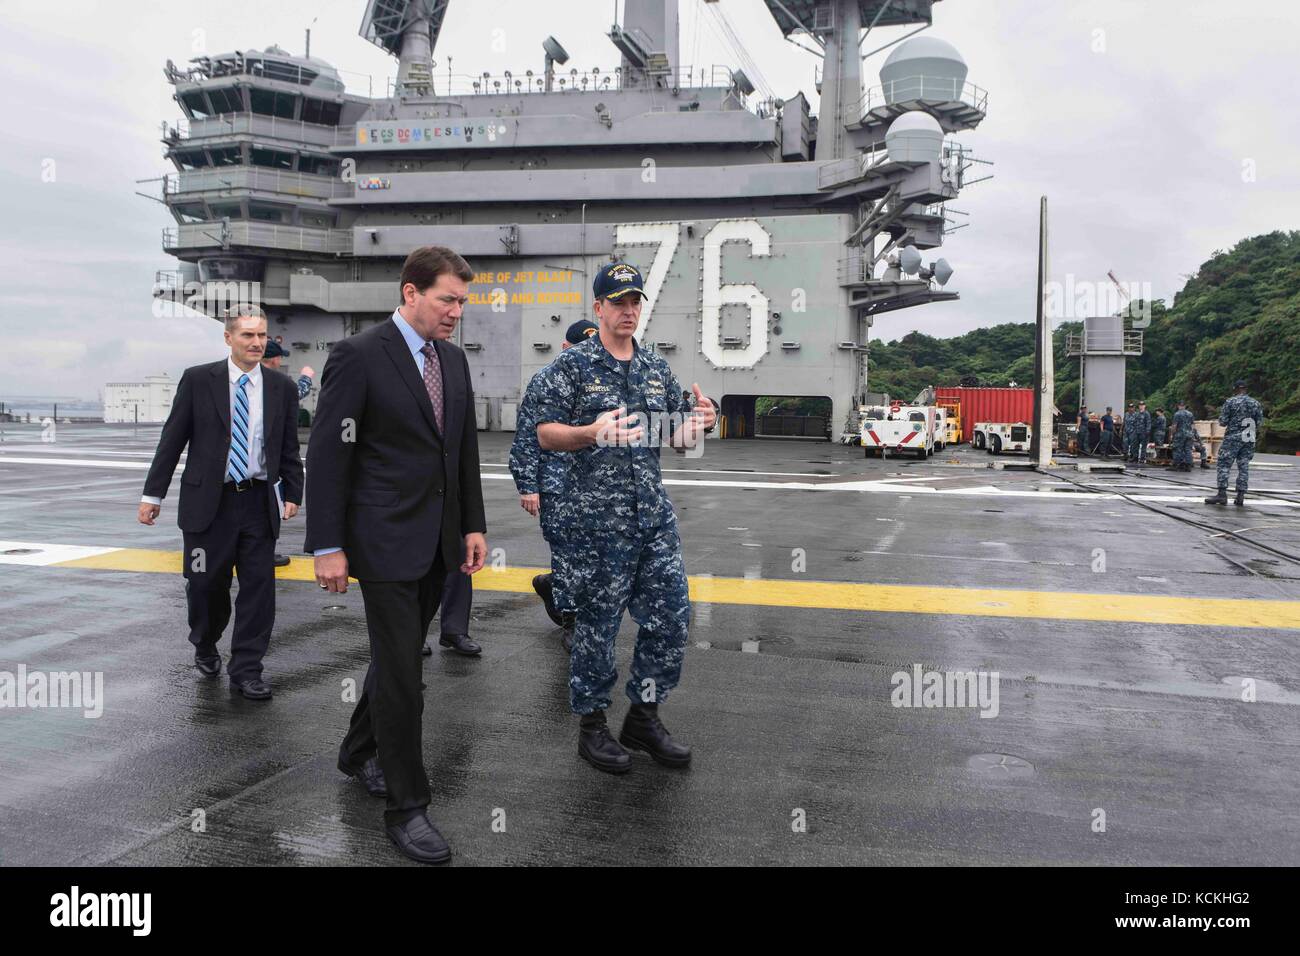 U.s. navy kommandierender Offizier buzz Donnelly (rechts) gibt US-Botschafter in Japan william Hagerty eine Tour der US Navy Flugzeugträger der Nimitz-Klasse uss Ronald Reagan am 6. September 2017 in Yokosuka, Japan. (Foto: MCS3 Macadam weissman über planetpix) Stockfoto